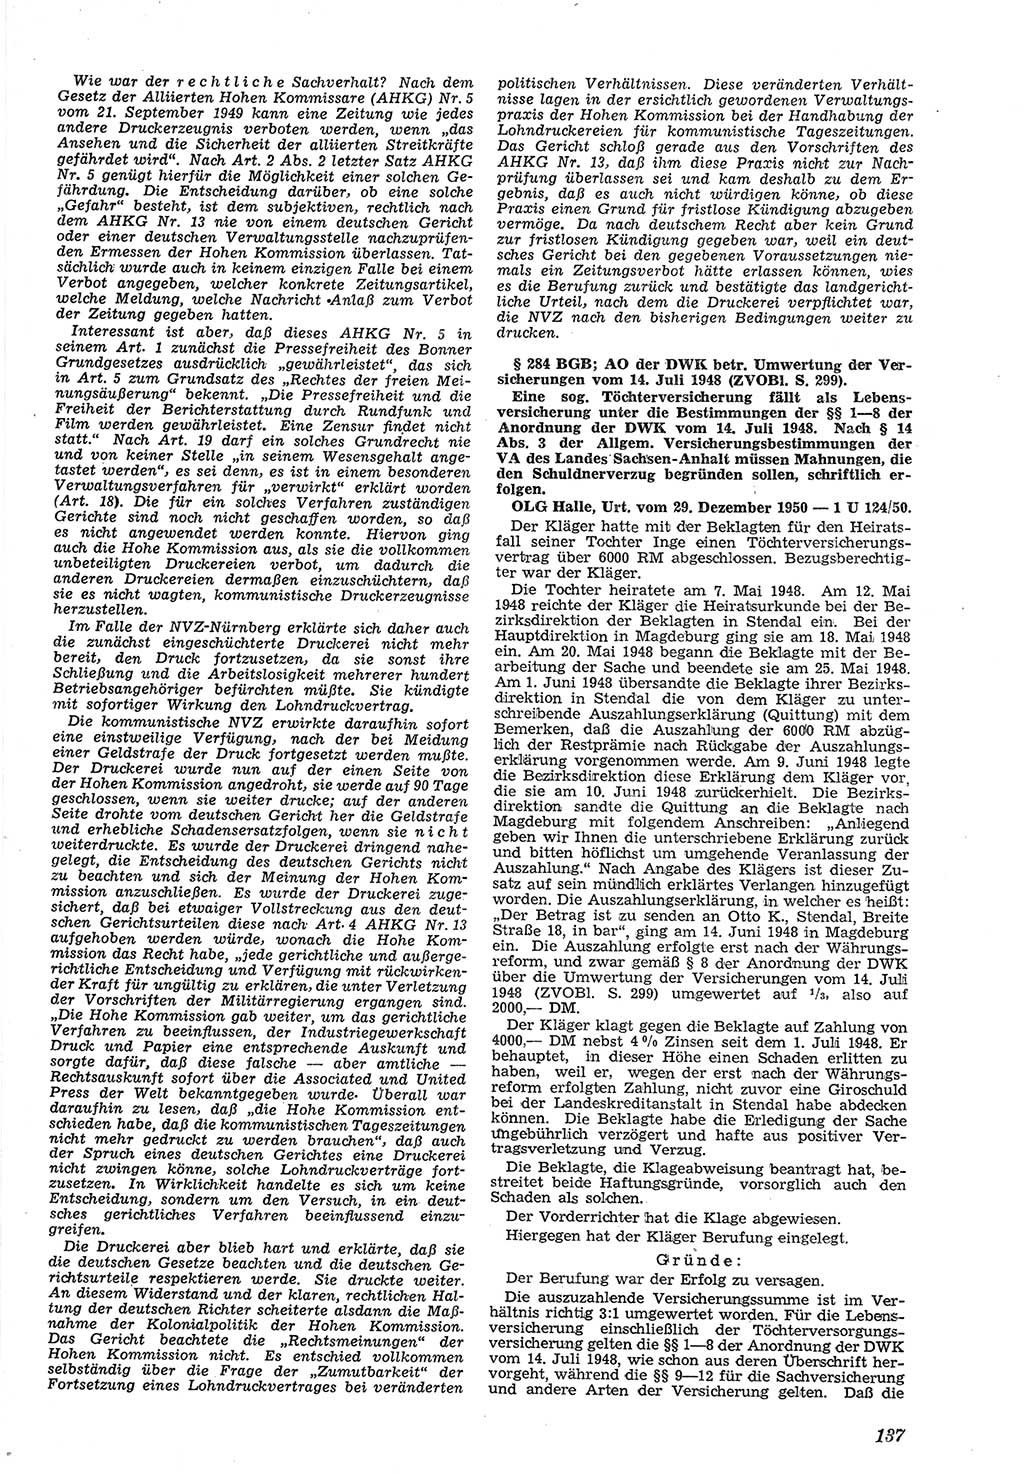 Neue Justiz (NJ), Zeitschrift für Recht und Rechtswissenschaft [Deutsche Demokratische Republik (DDR)], 5. Jahrgang 1951, Seite 137 (NJ DDR 1951, S. 137)